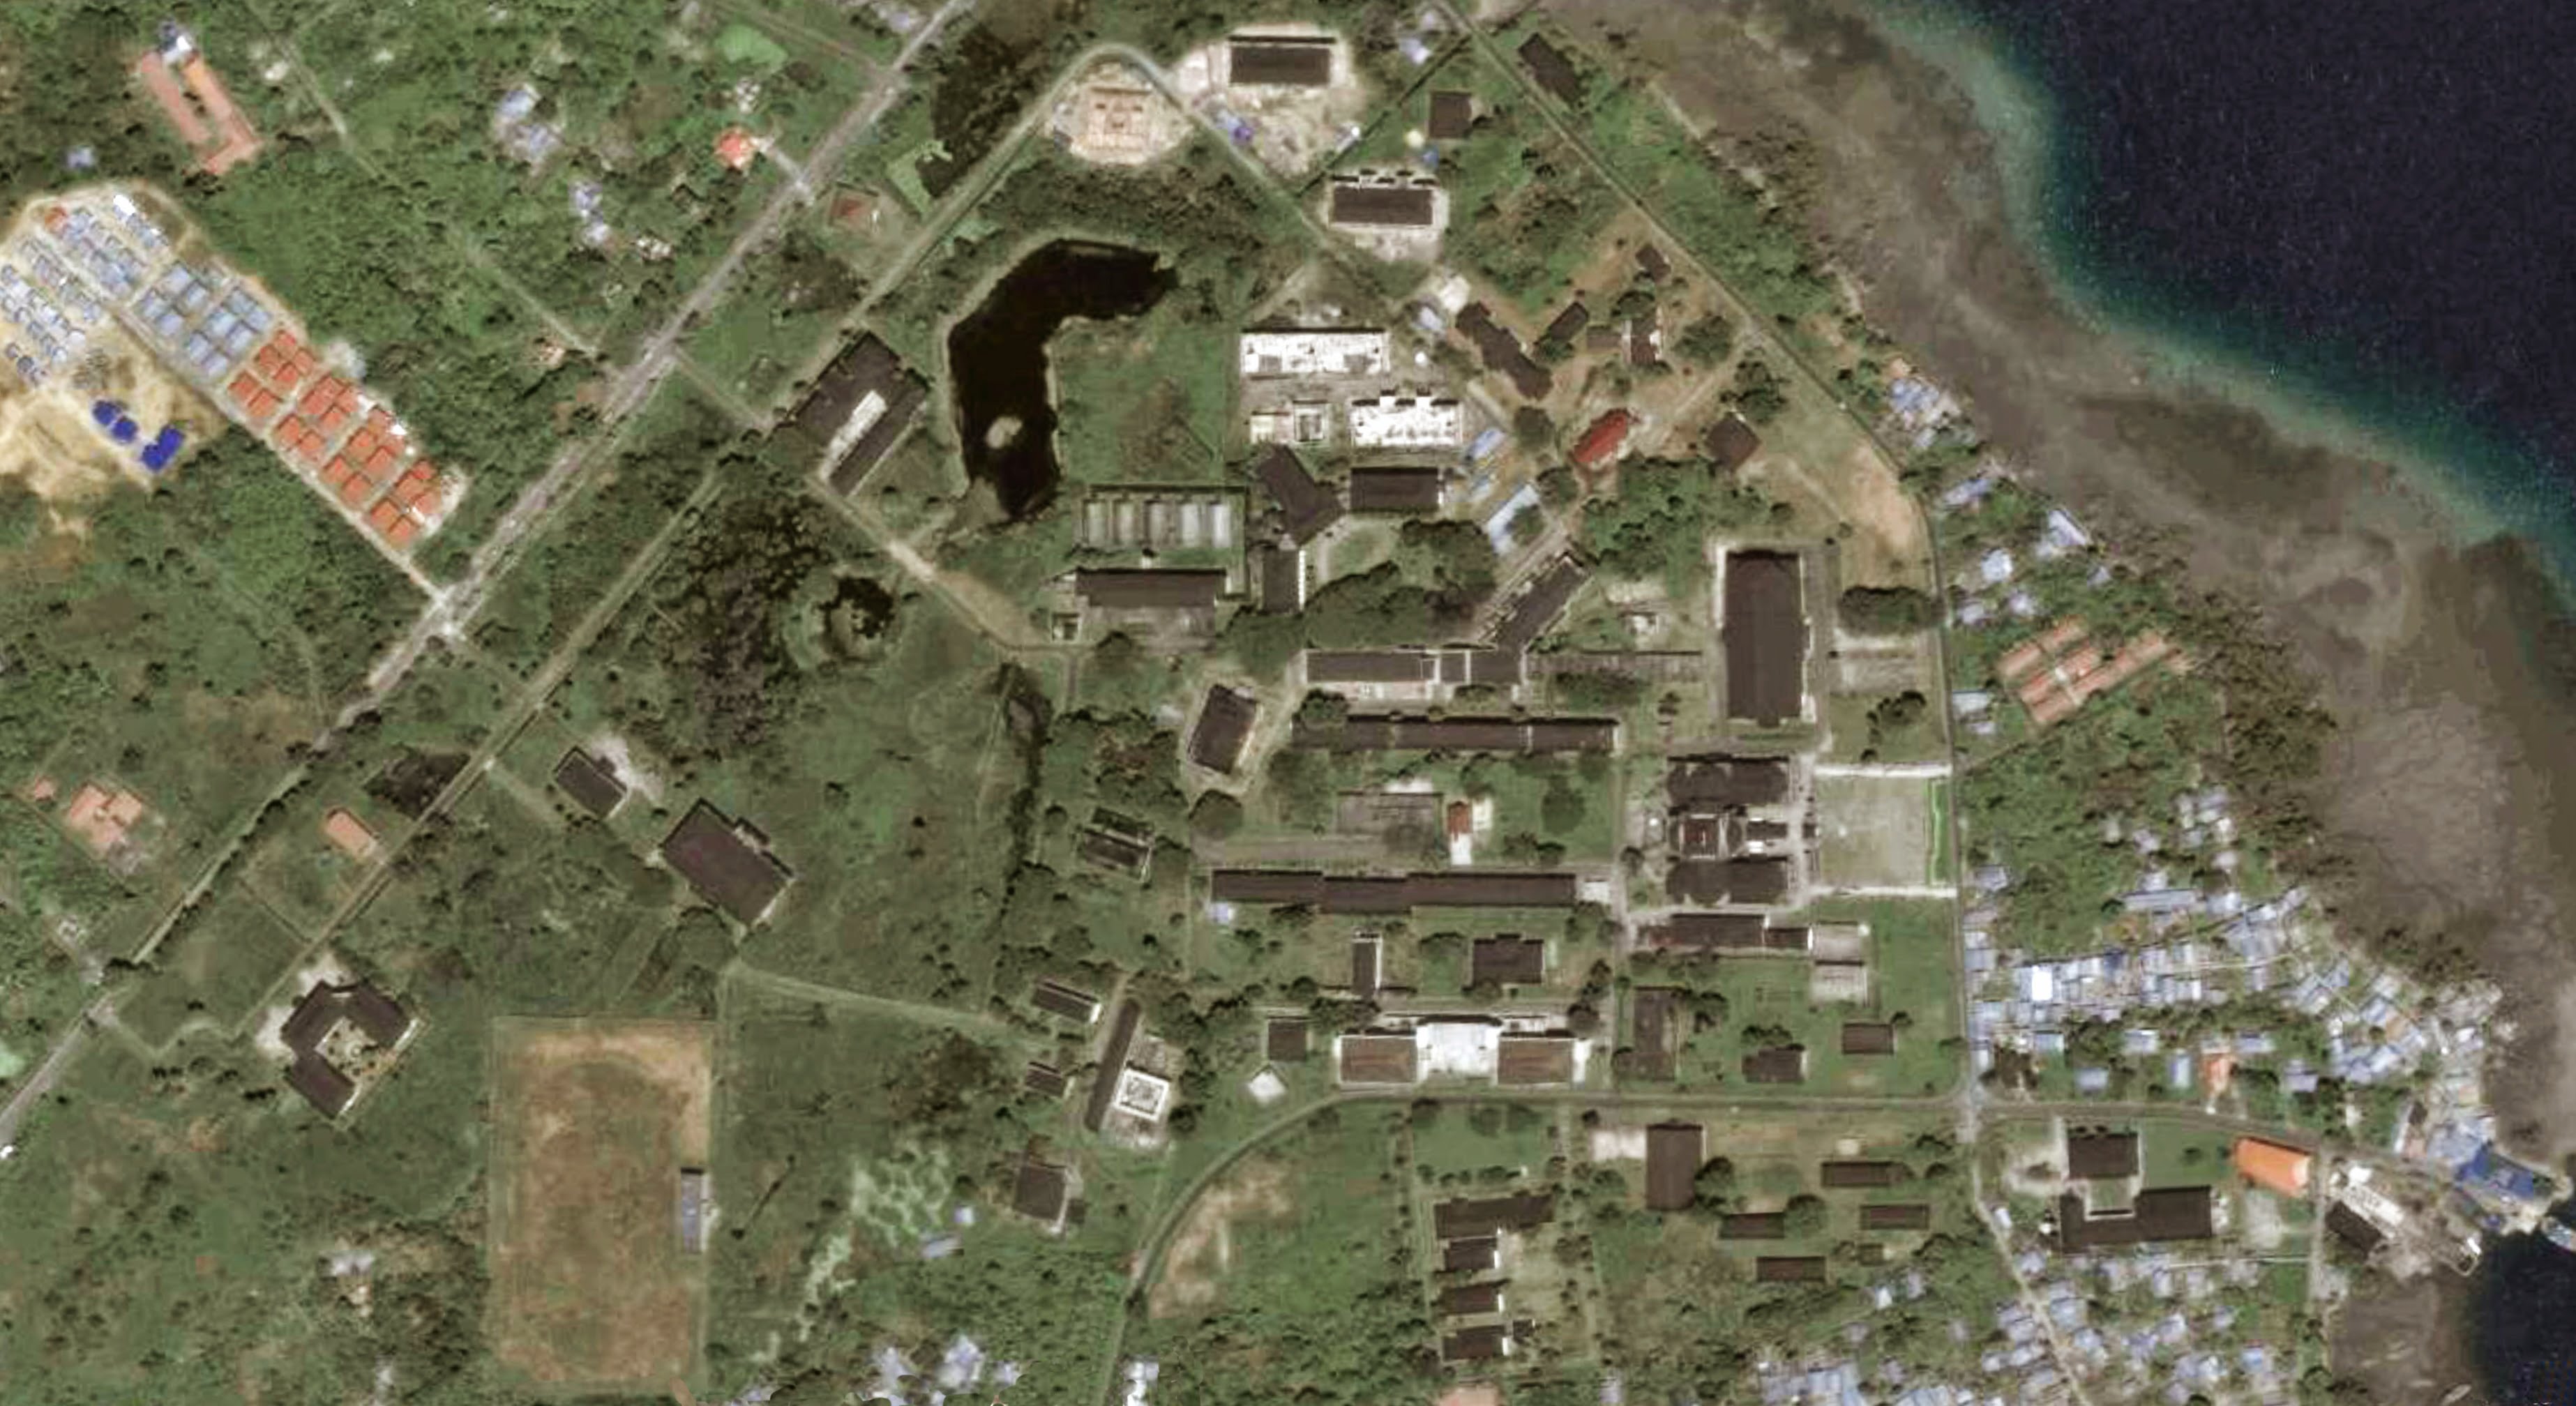 Universitas Pattimura campus aerial.1383471346